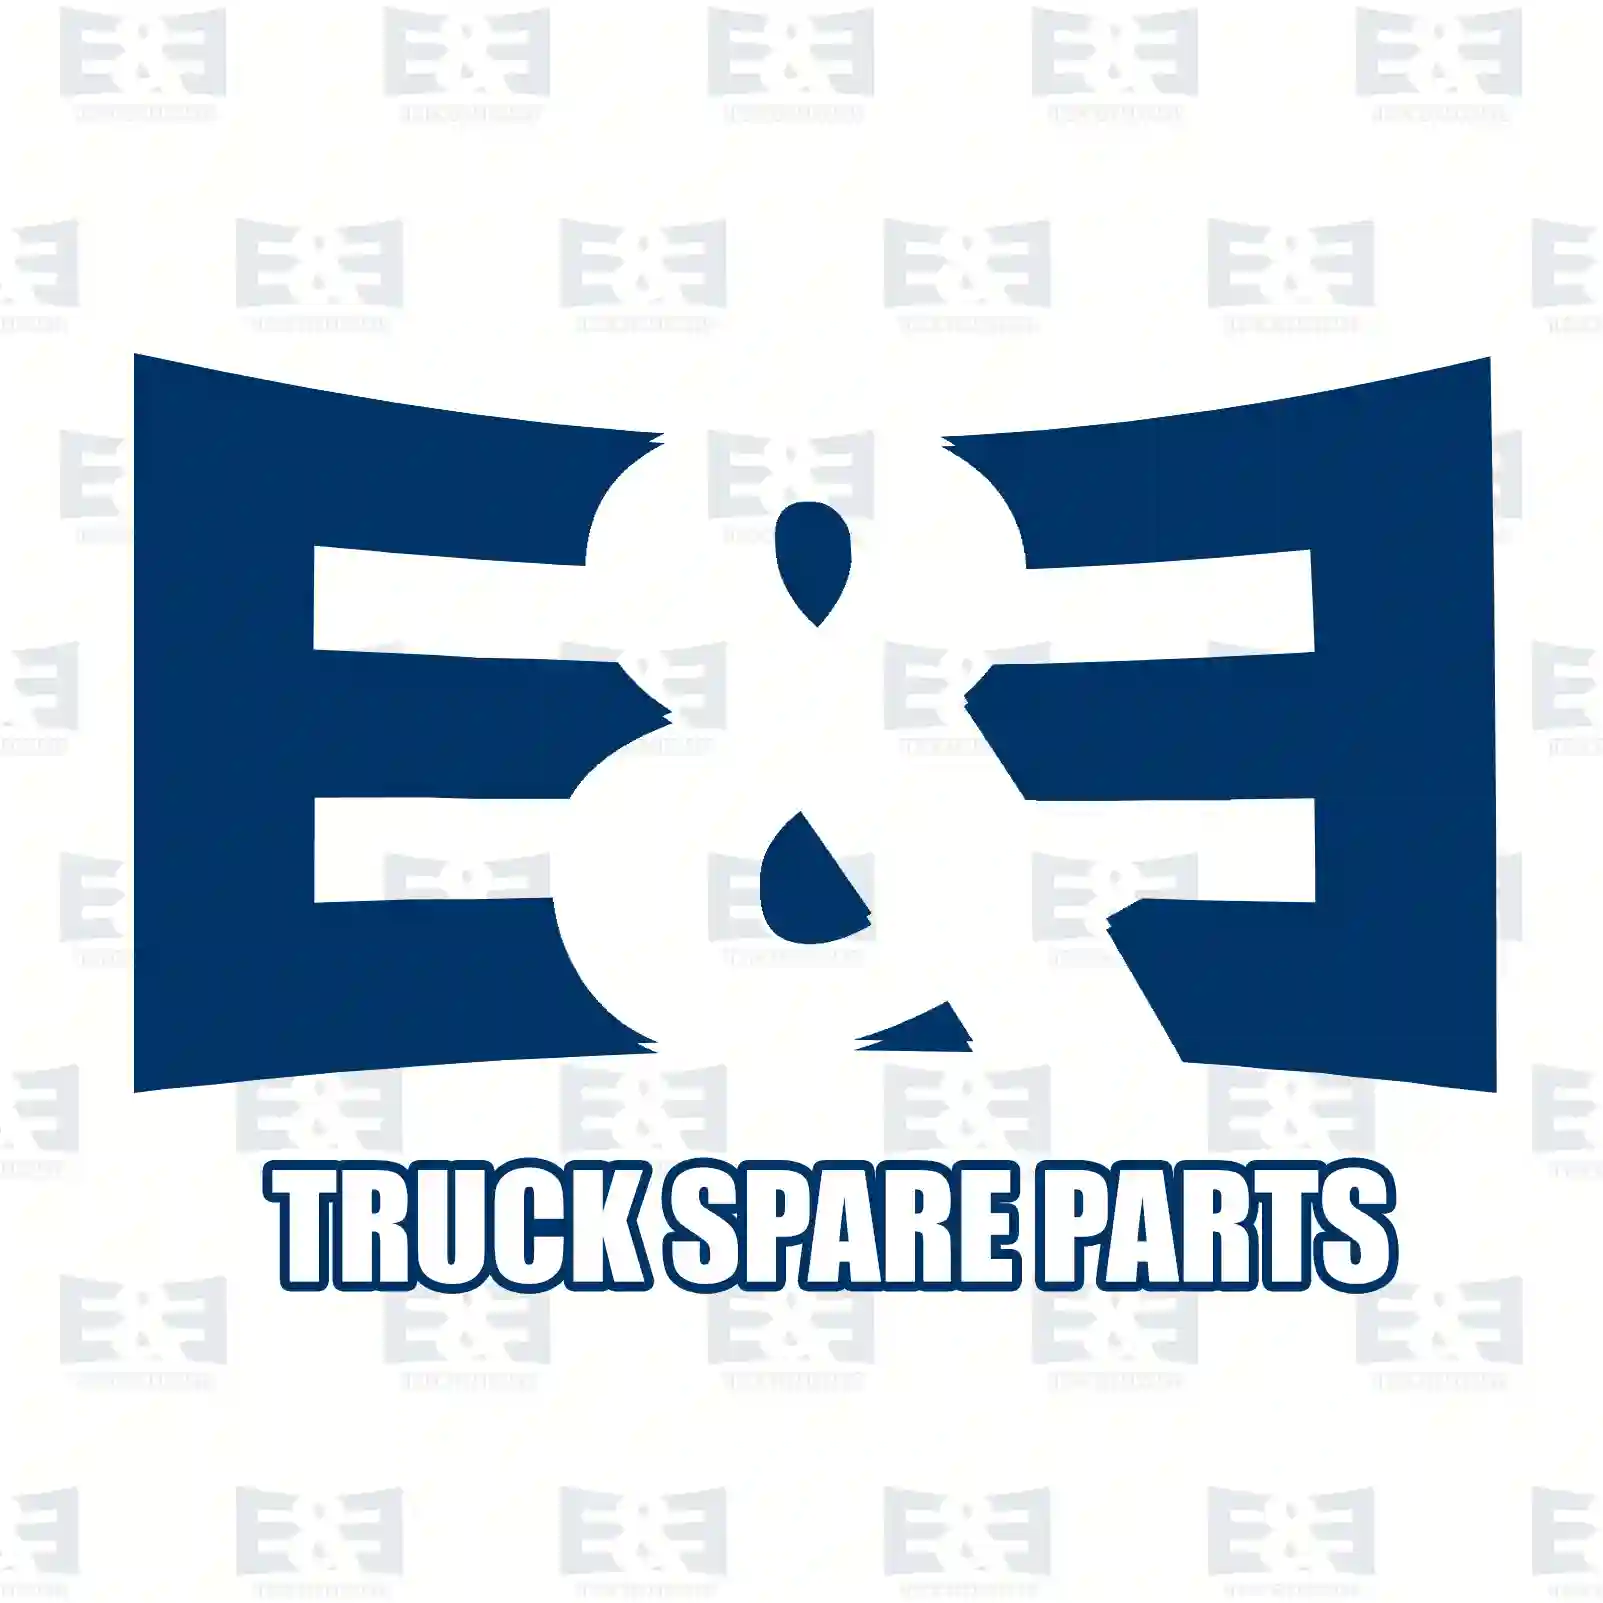 Brake shoe spring, 2E2293737, 21205194, 21205194PK100 ||  2E2293737 E&E Truck Spare Parts | Truck Spare Parts, Auotomotive Spare Parts Brake shoe spring, 2E2293737, 21205194, 21205194PK100 ||  2E2293737 E&E Truck Spare Parts | Truck Spare Parts, Auotomotive Spare Parts